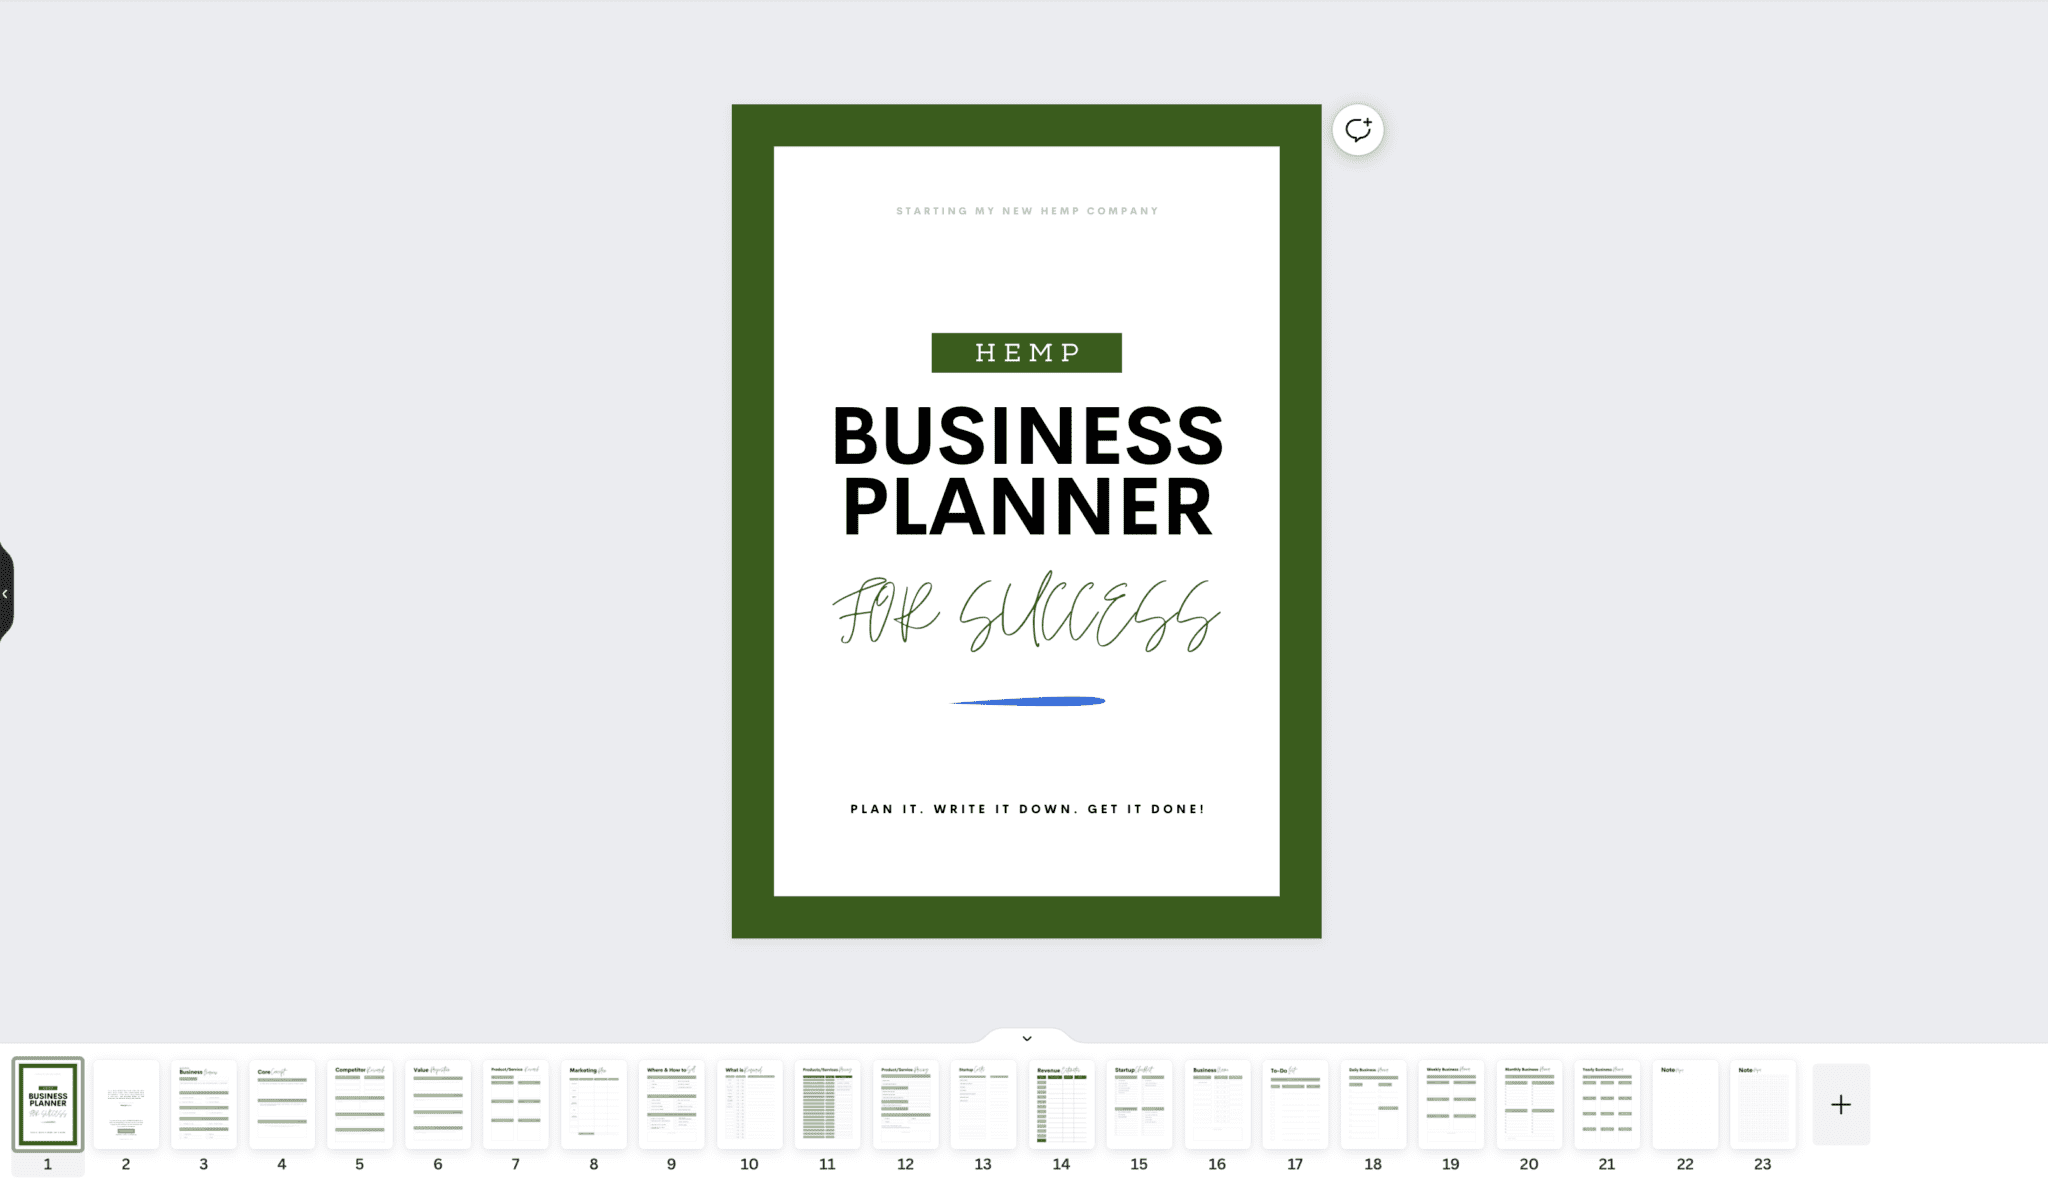 Hemp Business Planner Overview